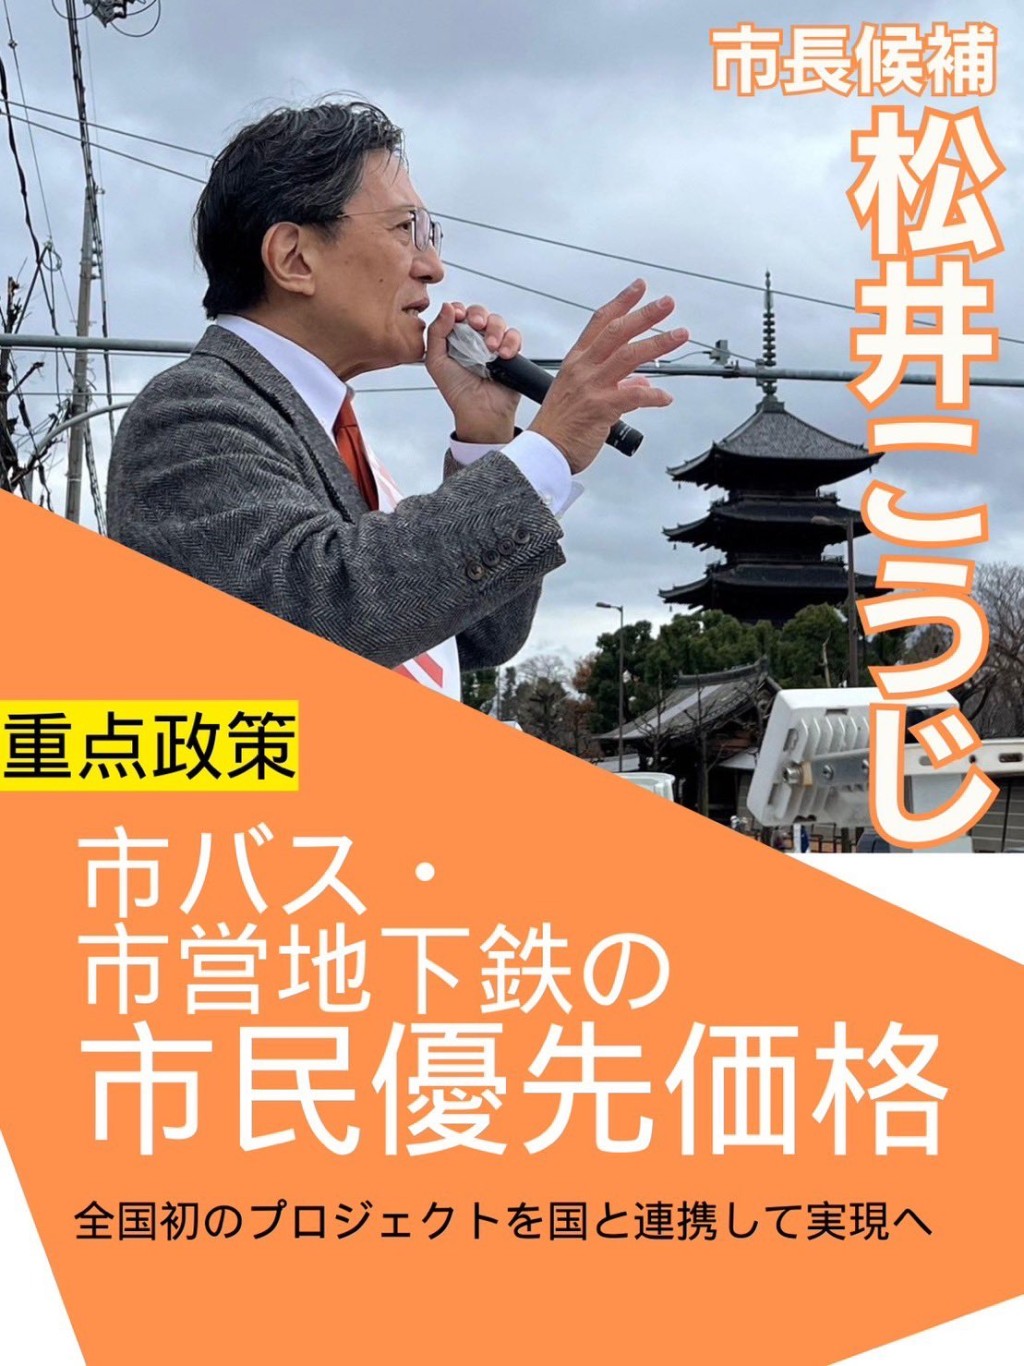 松井孝治建議巴士地鐵「分級收費」，市民較遊客便宜。 X